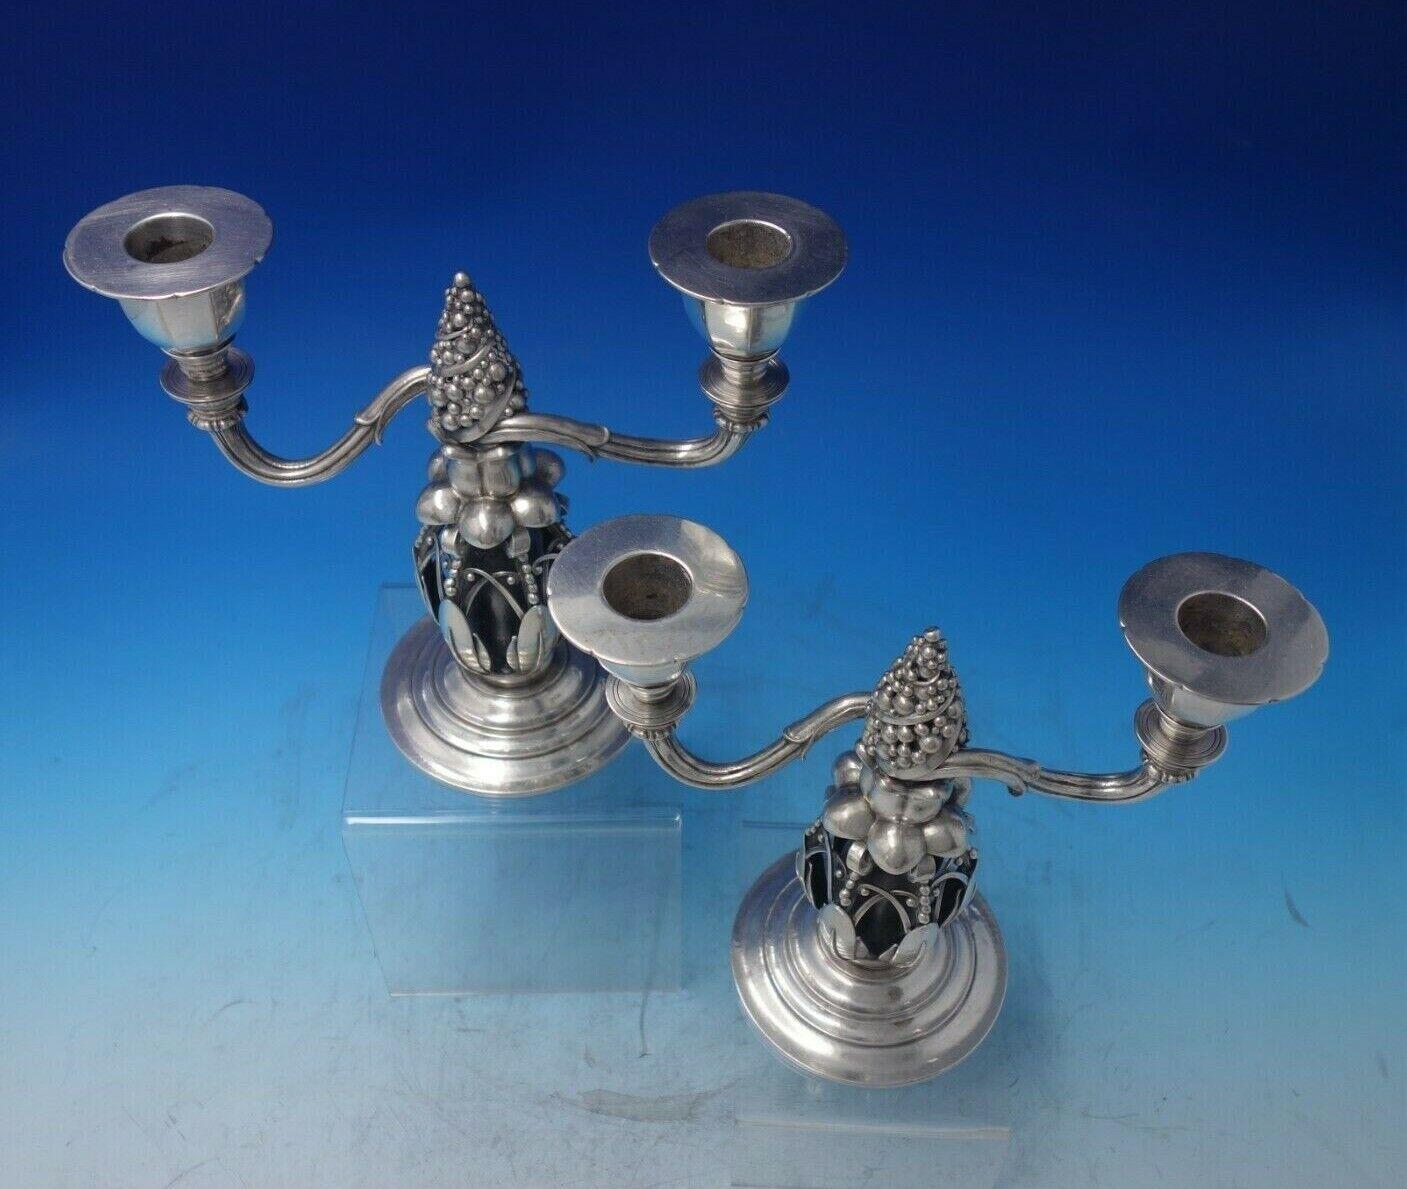 Georg Jensen

Rarissime paire de candélabres Georg Jensen à deux lumières, avec des cônes de sapin figurés et perlés, marqués #244. Les pièces mesurent 9